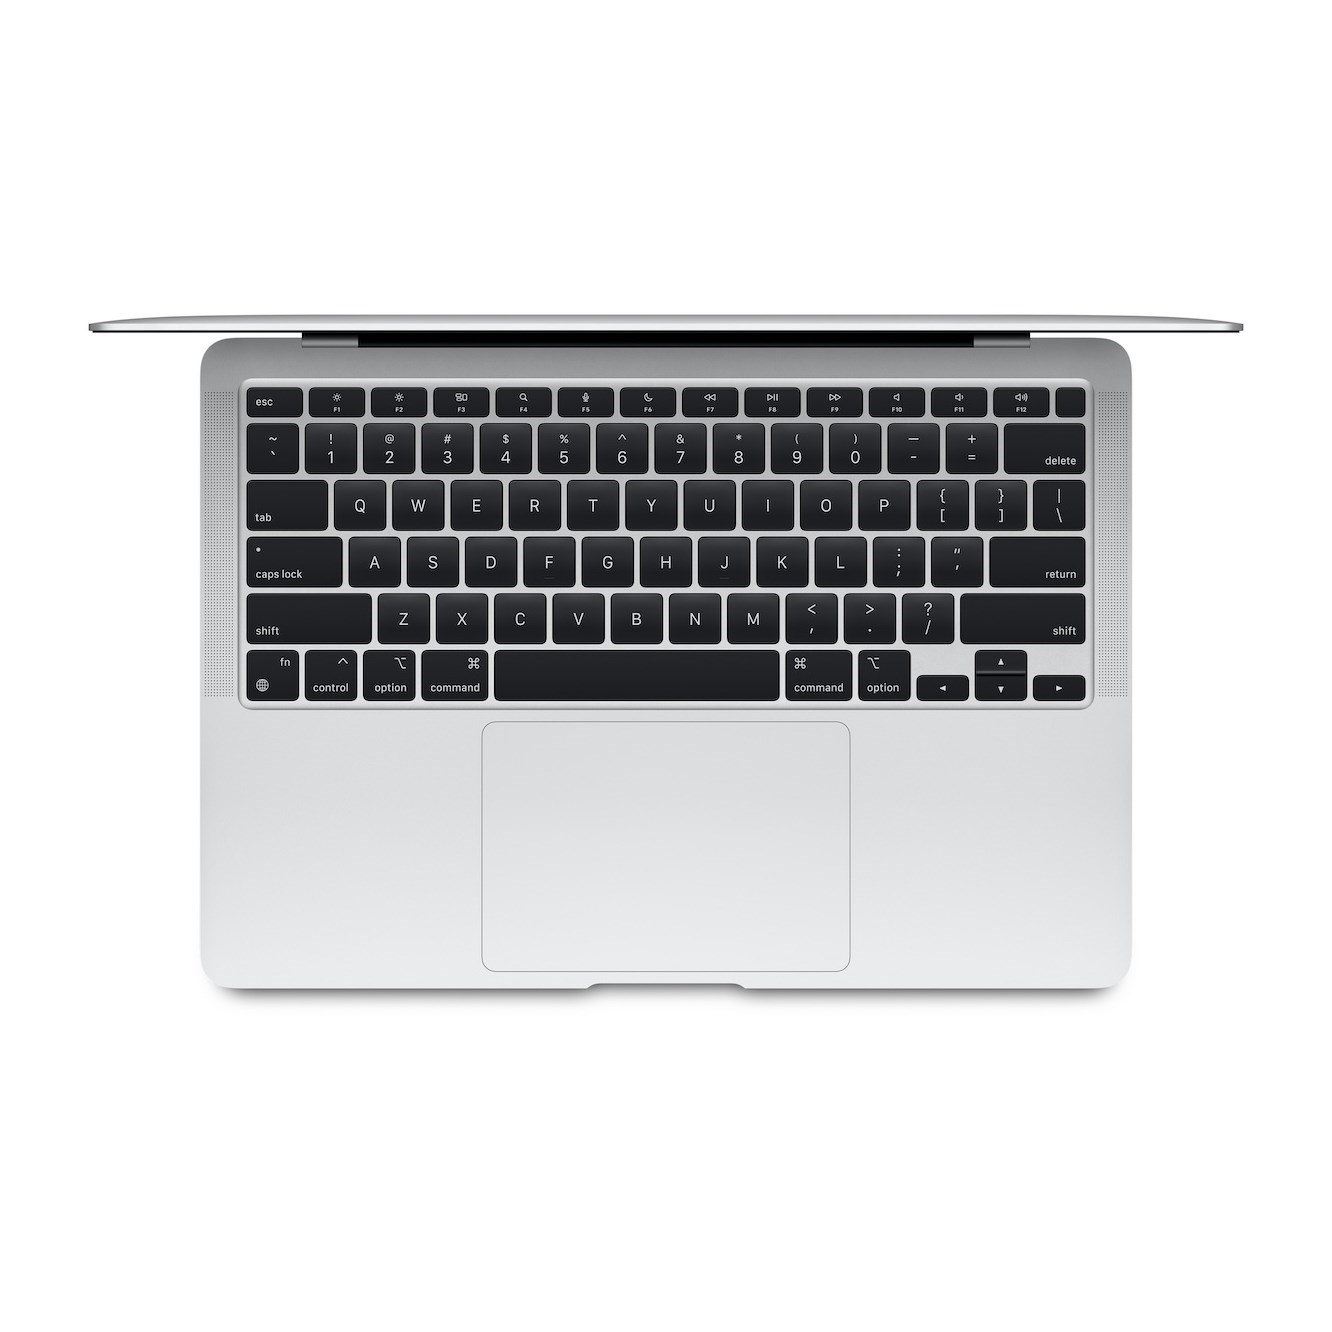 MacBook Air 13" - MGN93B/A